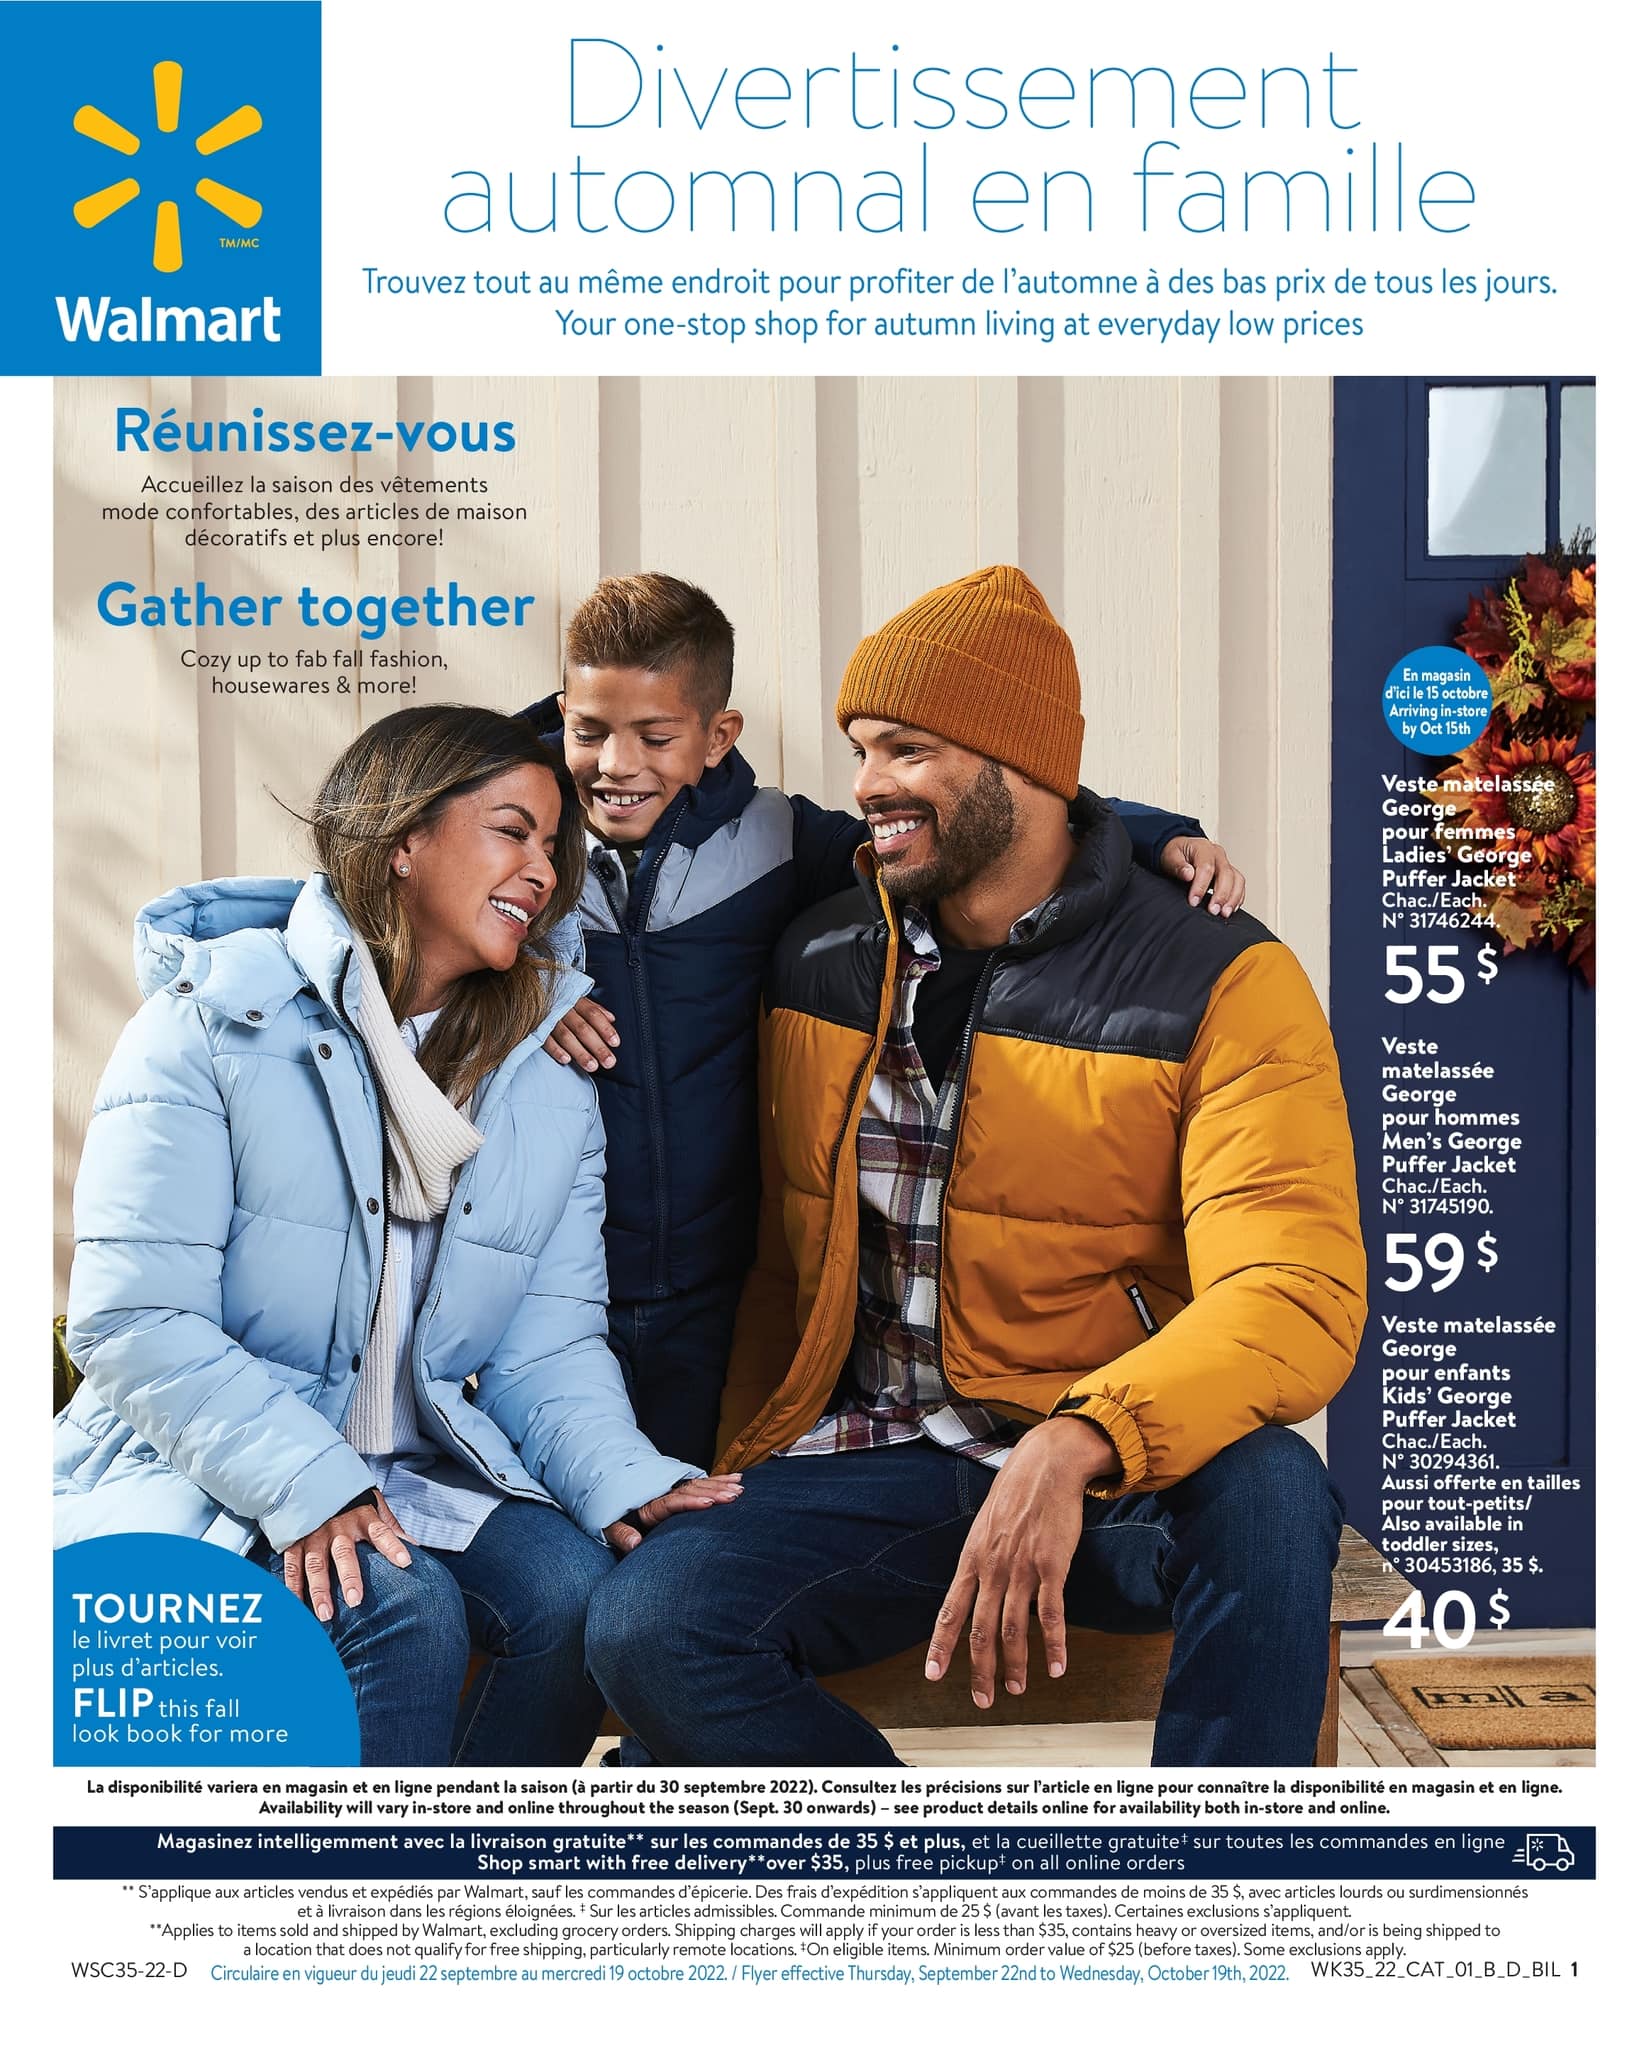 Circulaire Walmart - Divertissement Automnal en Famille - Page 1